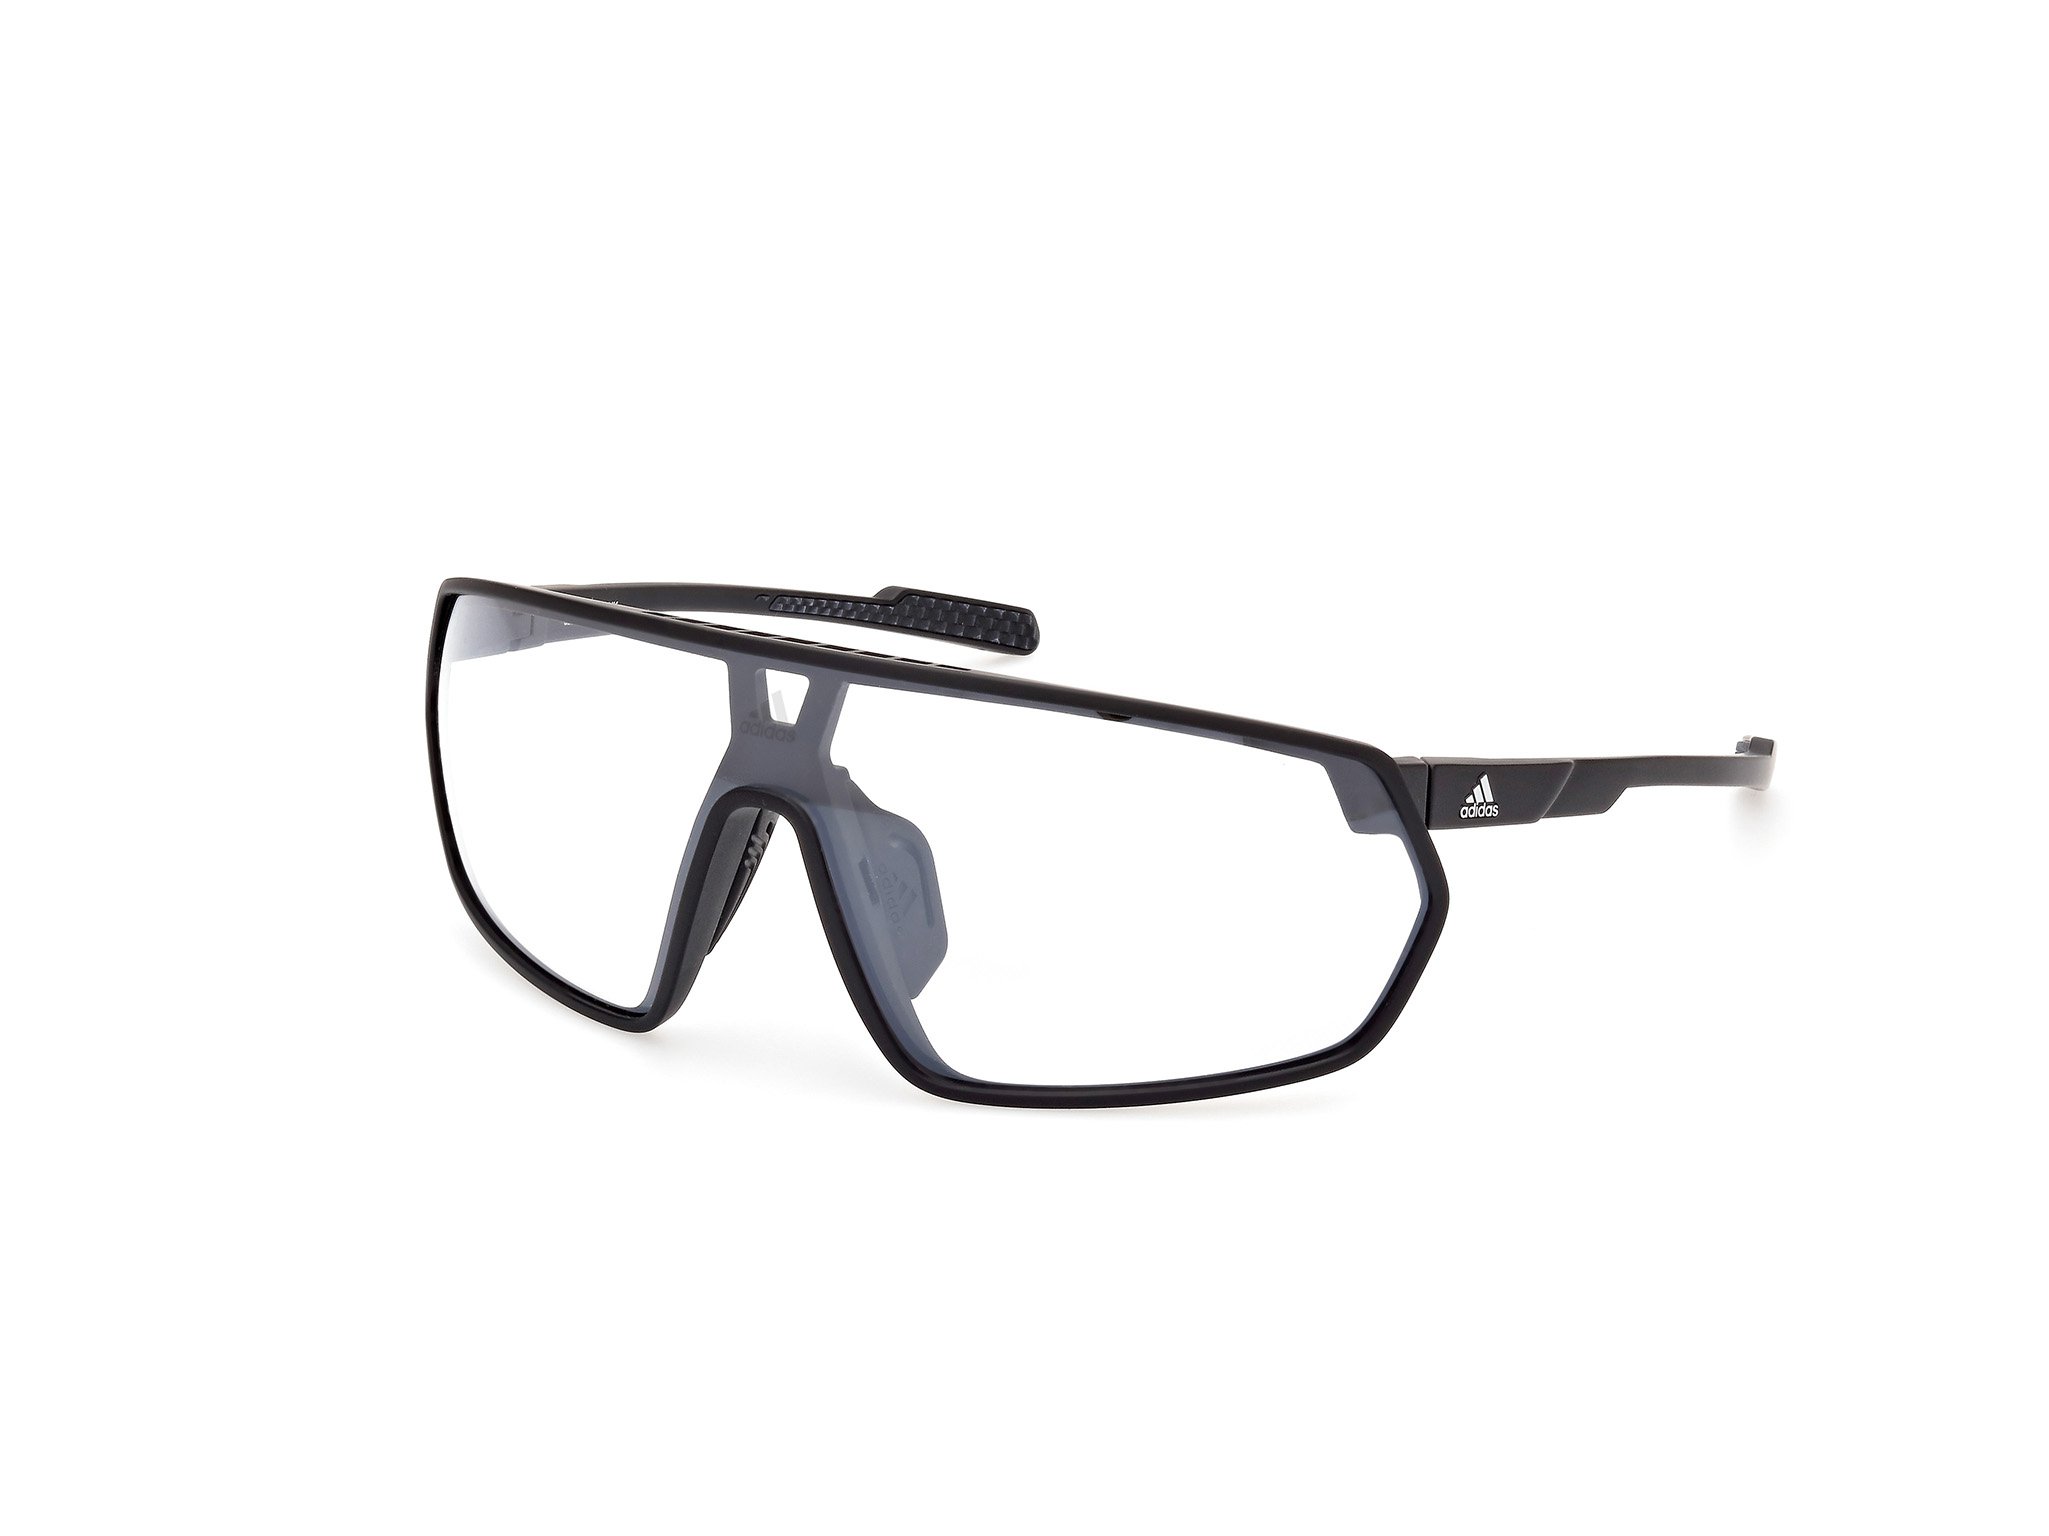 Das Bild zeigt die Sonnenbrille SP0089 02C von der Marke Adidas Sport in matt schwarz.